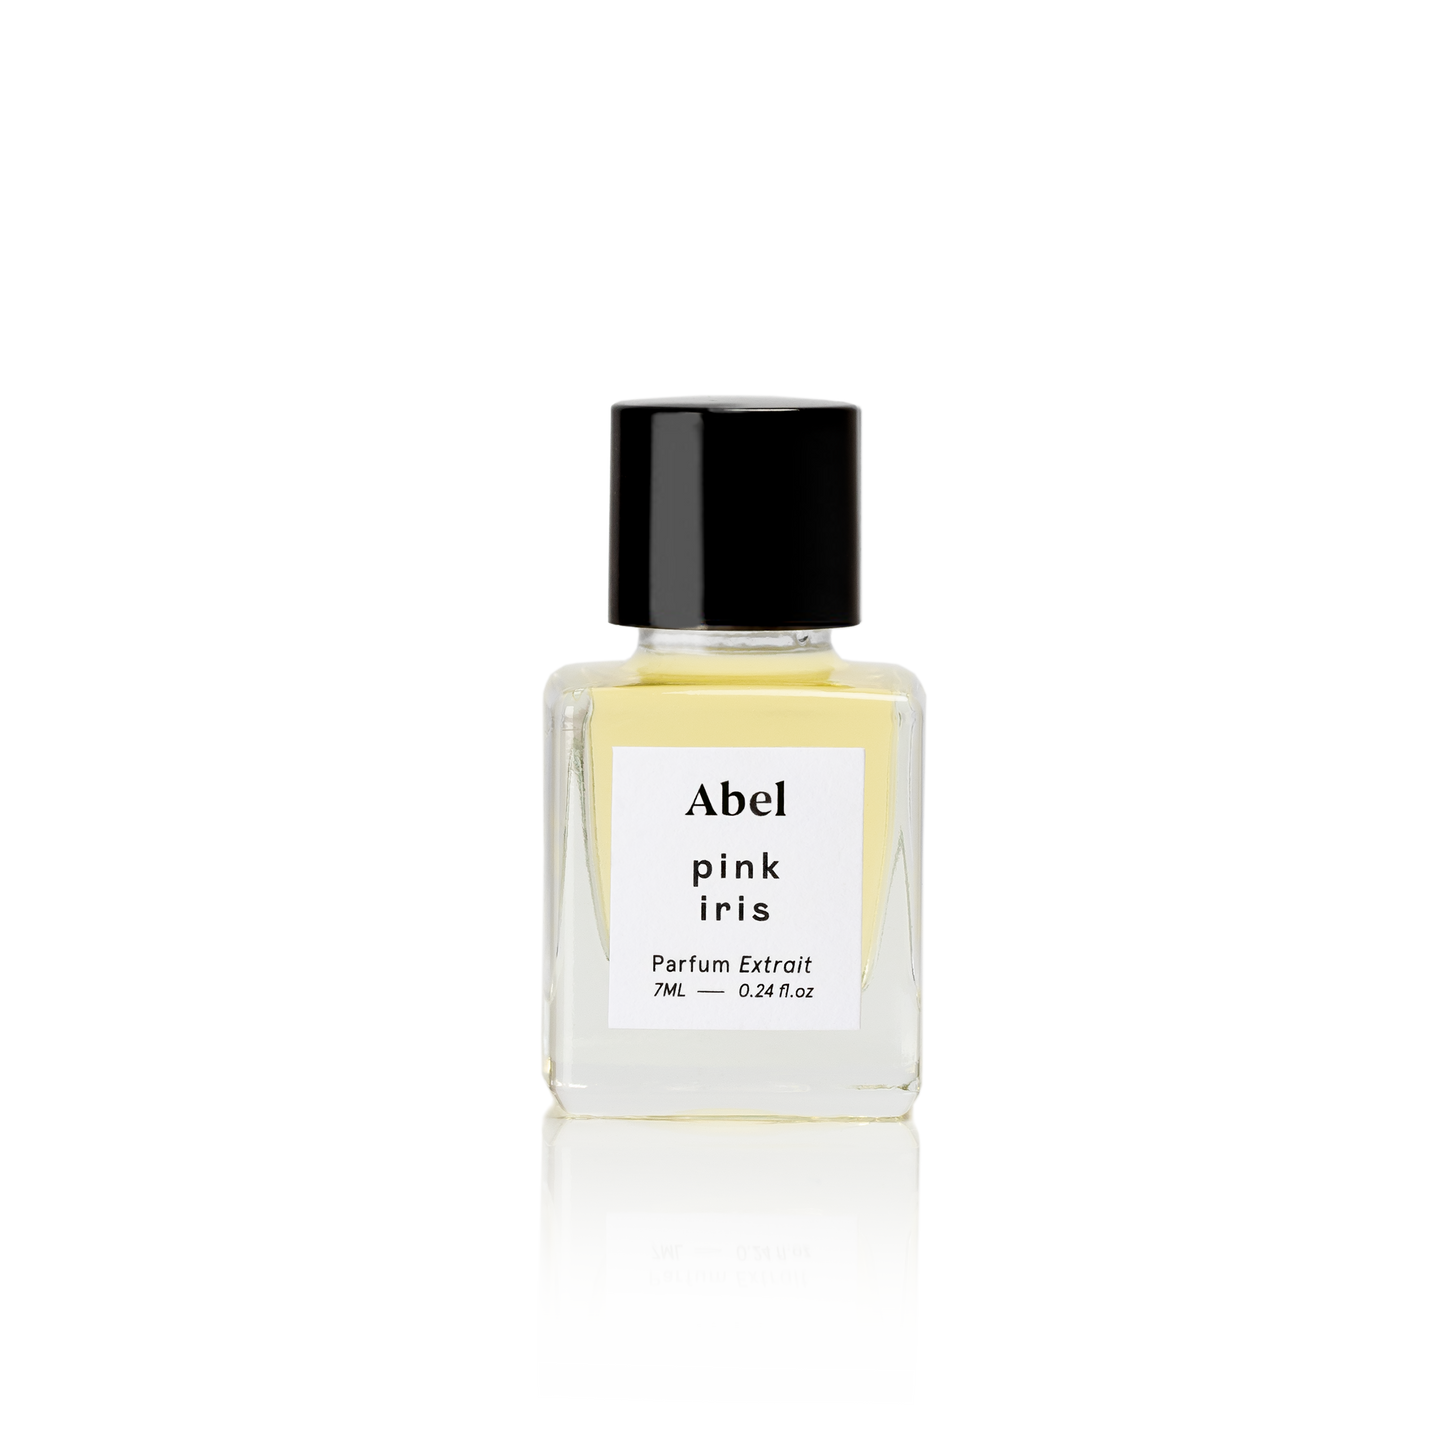 Abel Odor | Parfum Extrait - Found My Way Invercargill